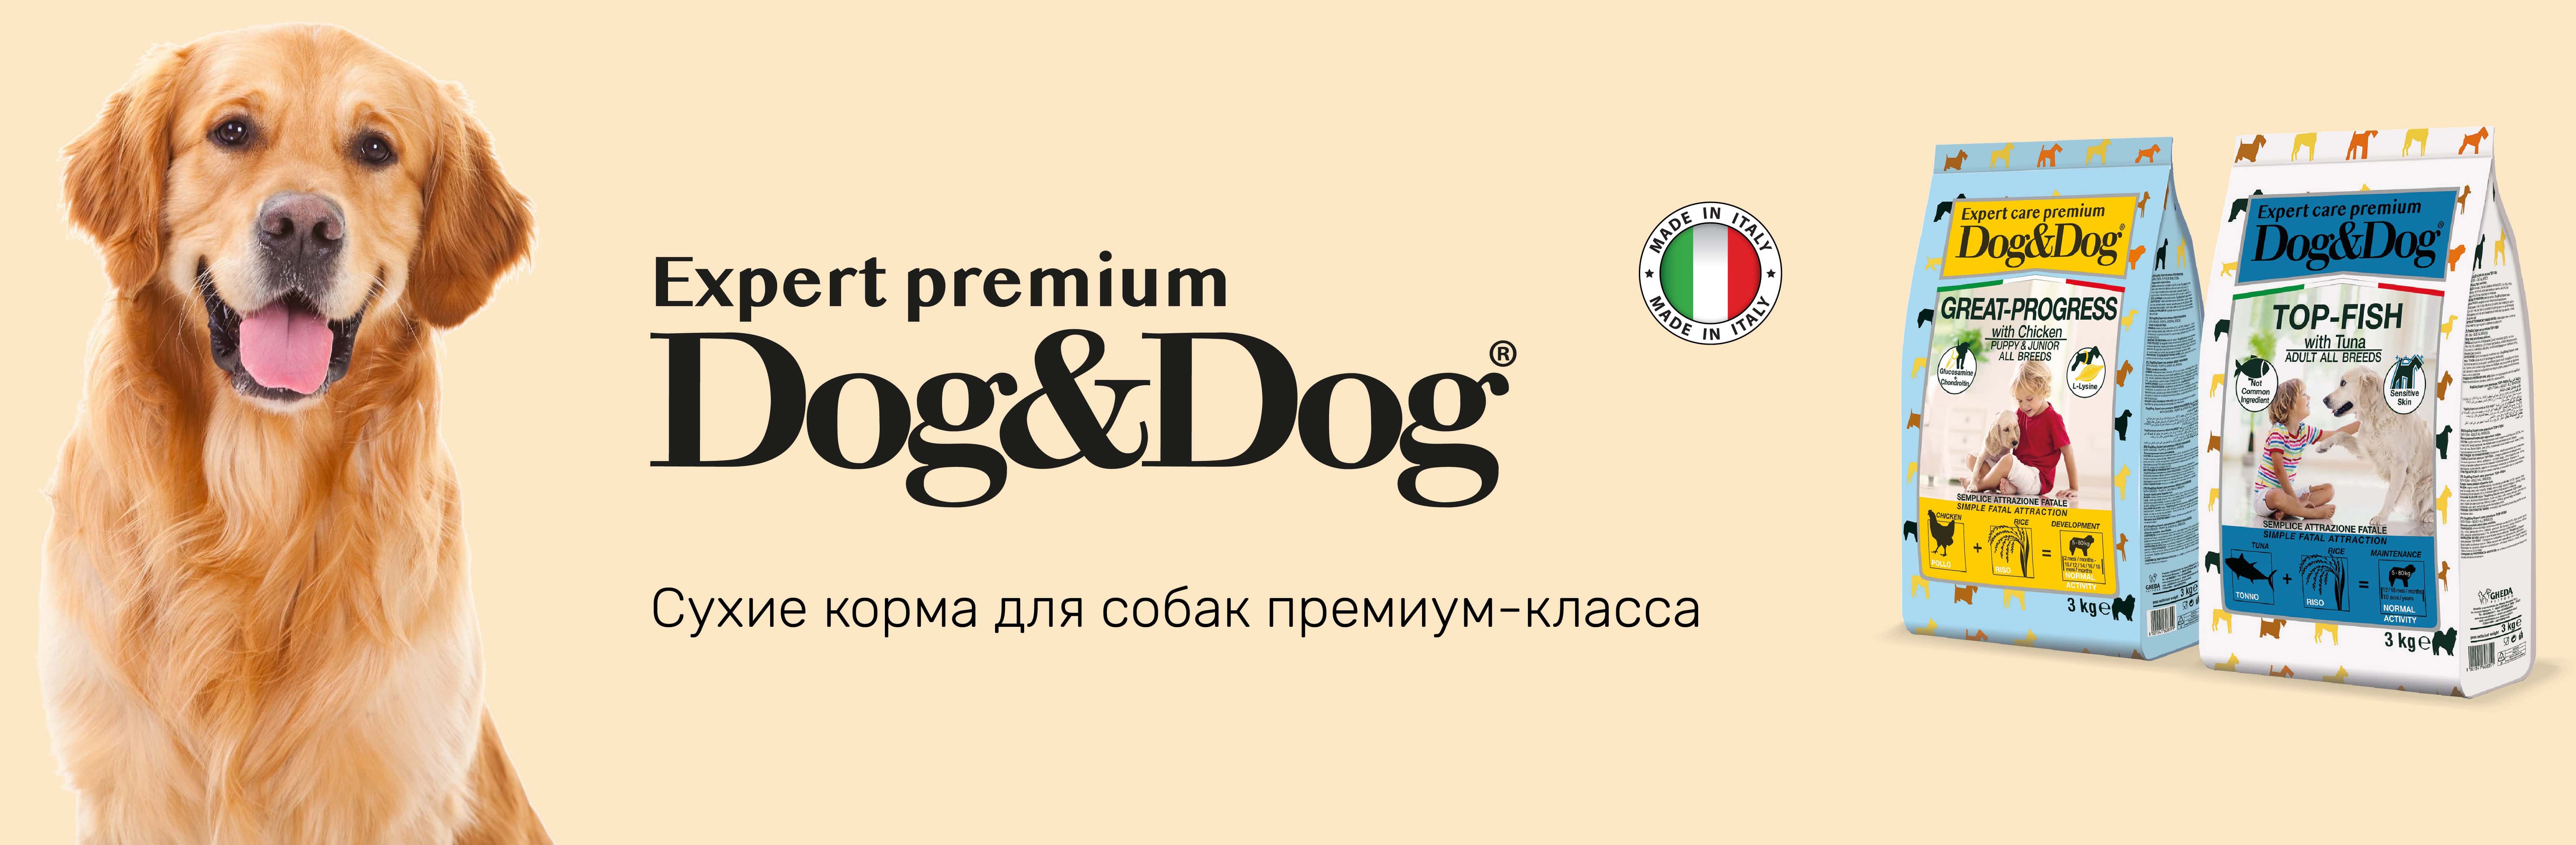 купить корм Dog&Dog с бесплатной доставкой в Калининграде